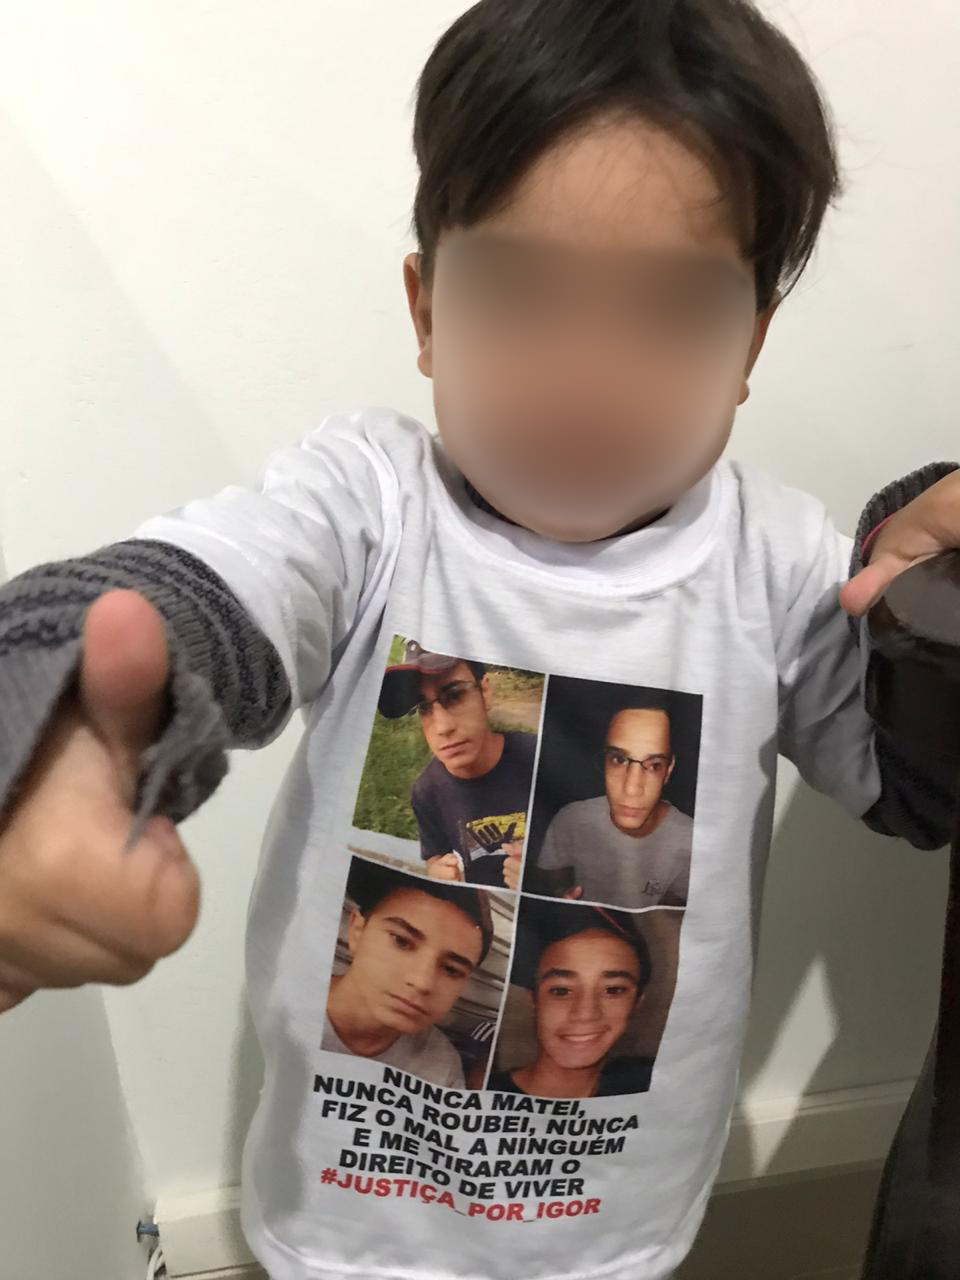 Após a morte de Igor, amigos e parentes participaram de uma manifestação pedindo justiça, e vestiram camisetas em homenagem ao jovem - Foto: arquivo pessoal /cedida por familiares